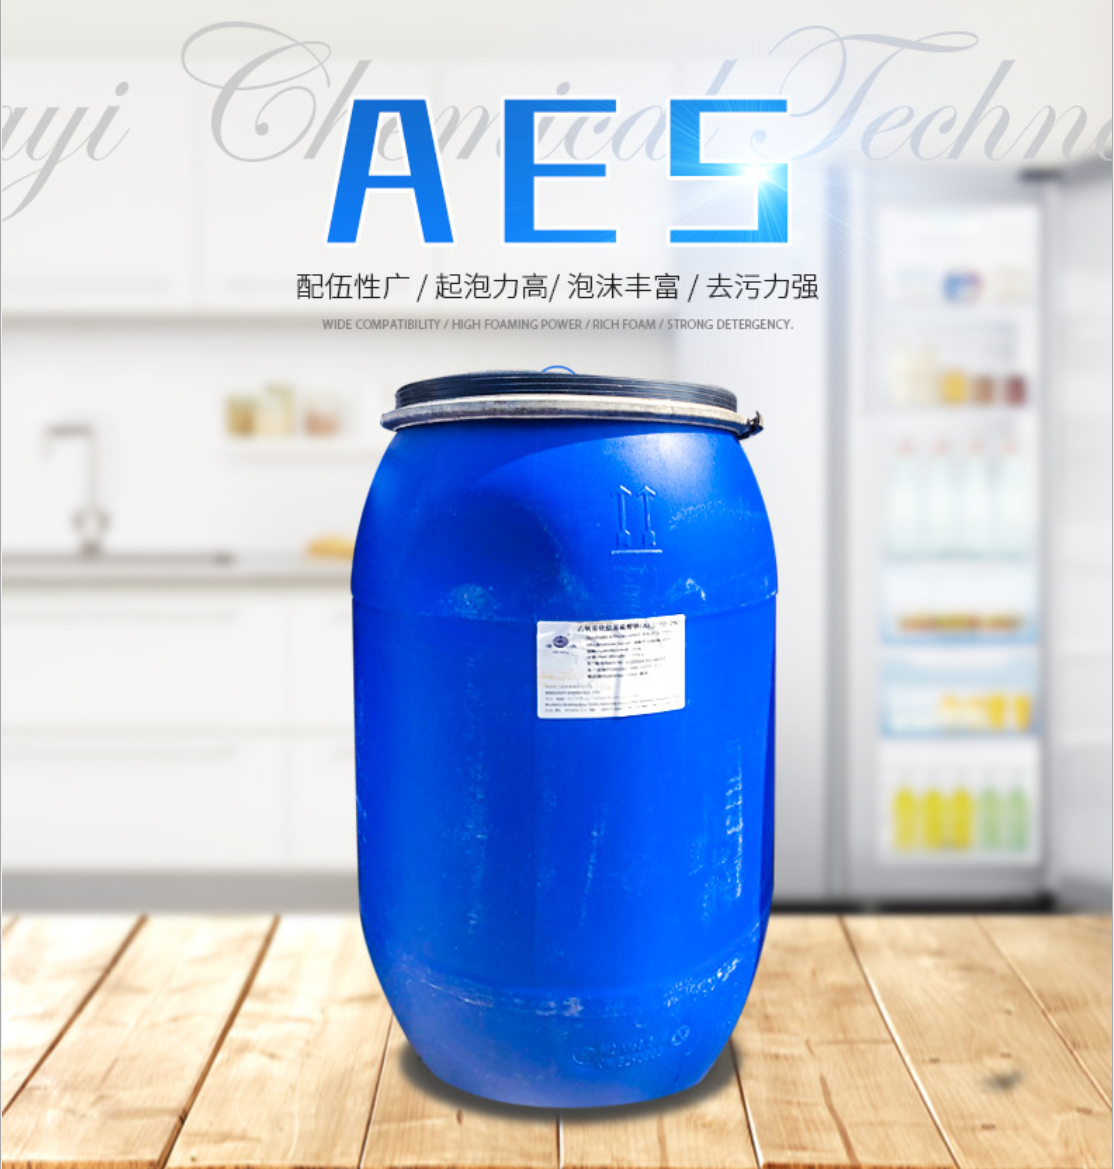 现货供应AES AEO-9 卡松洗涤剂aes 6501 6502 磺酸 cab-35 K122